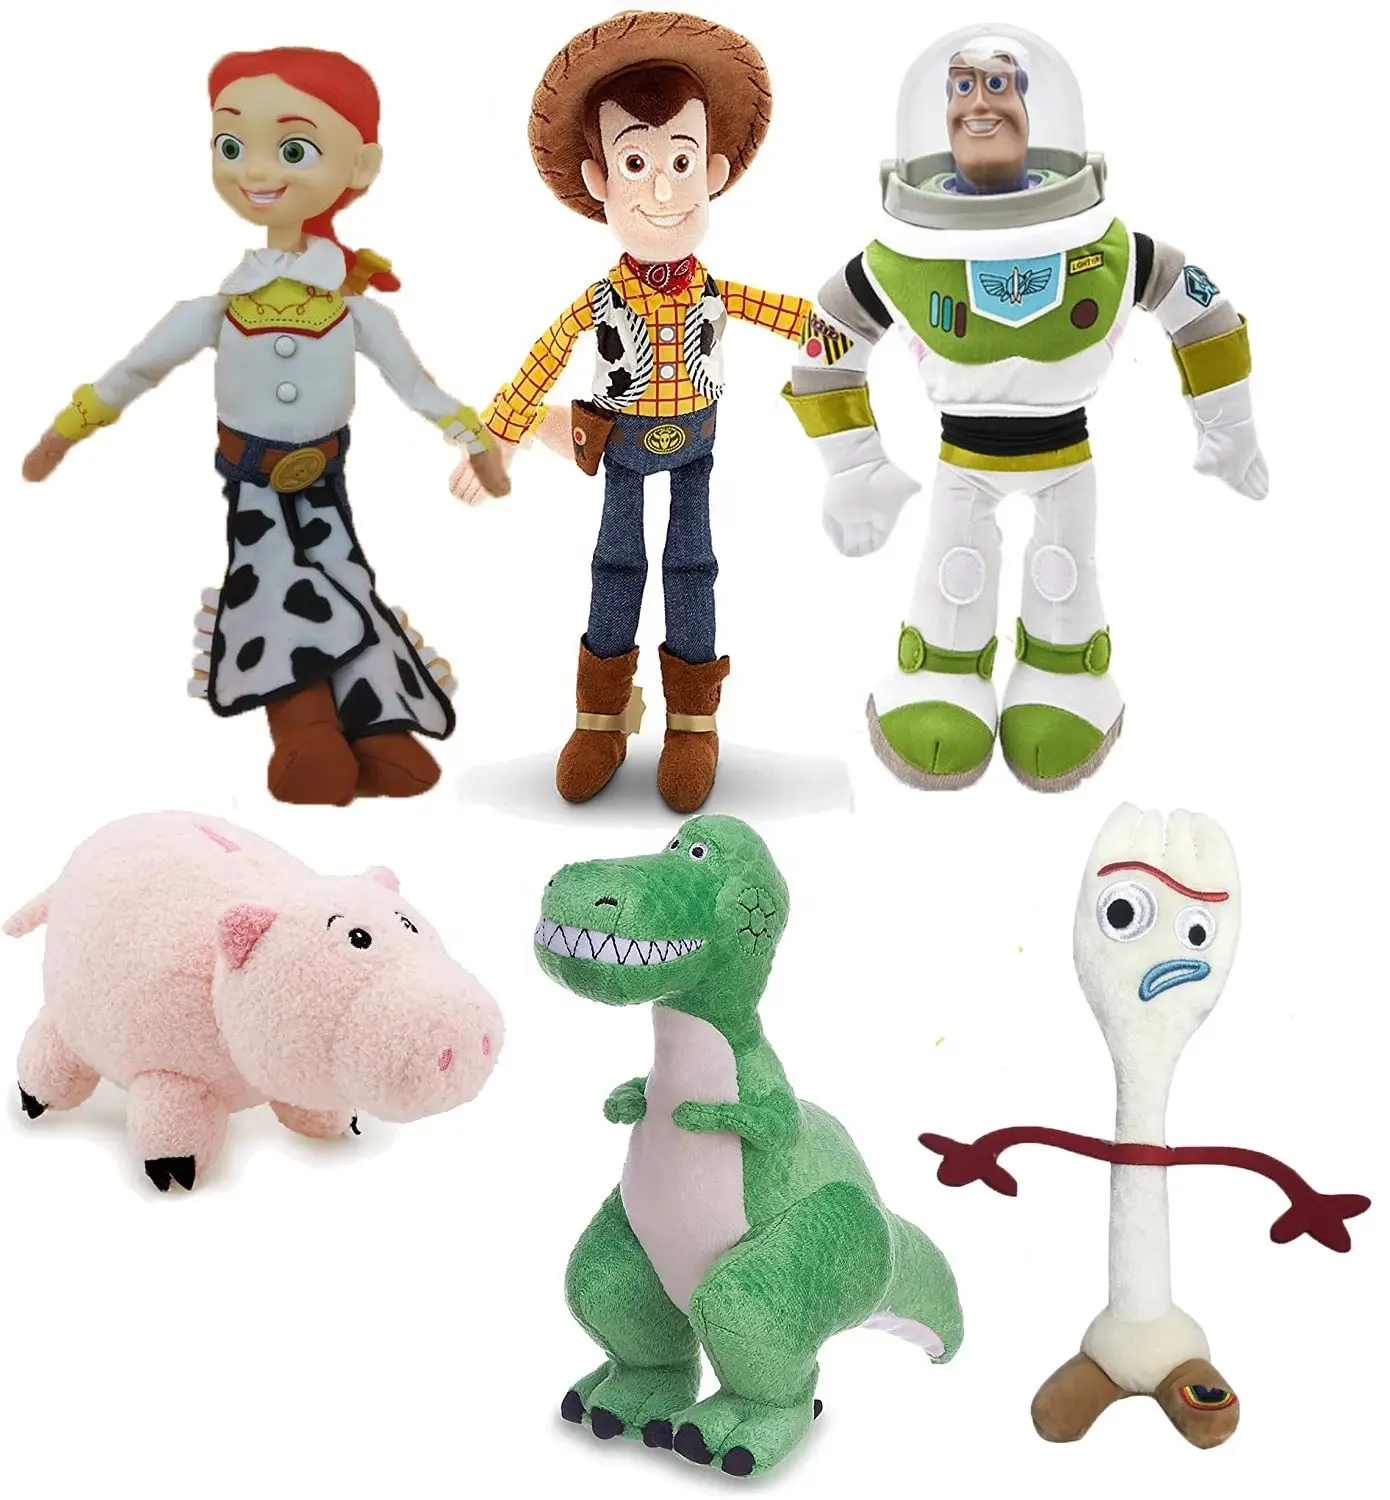 High quality Cartoon plush Toy Story Woody Buzz Jessie fokry Stuffed Plush Toys Dolls children Toy Kids Birthday Gift